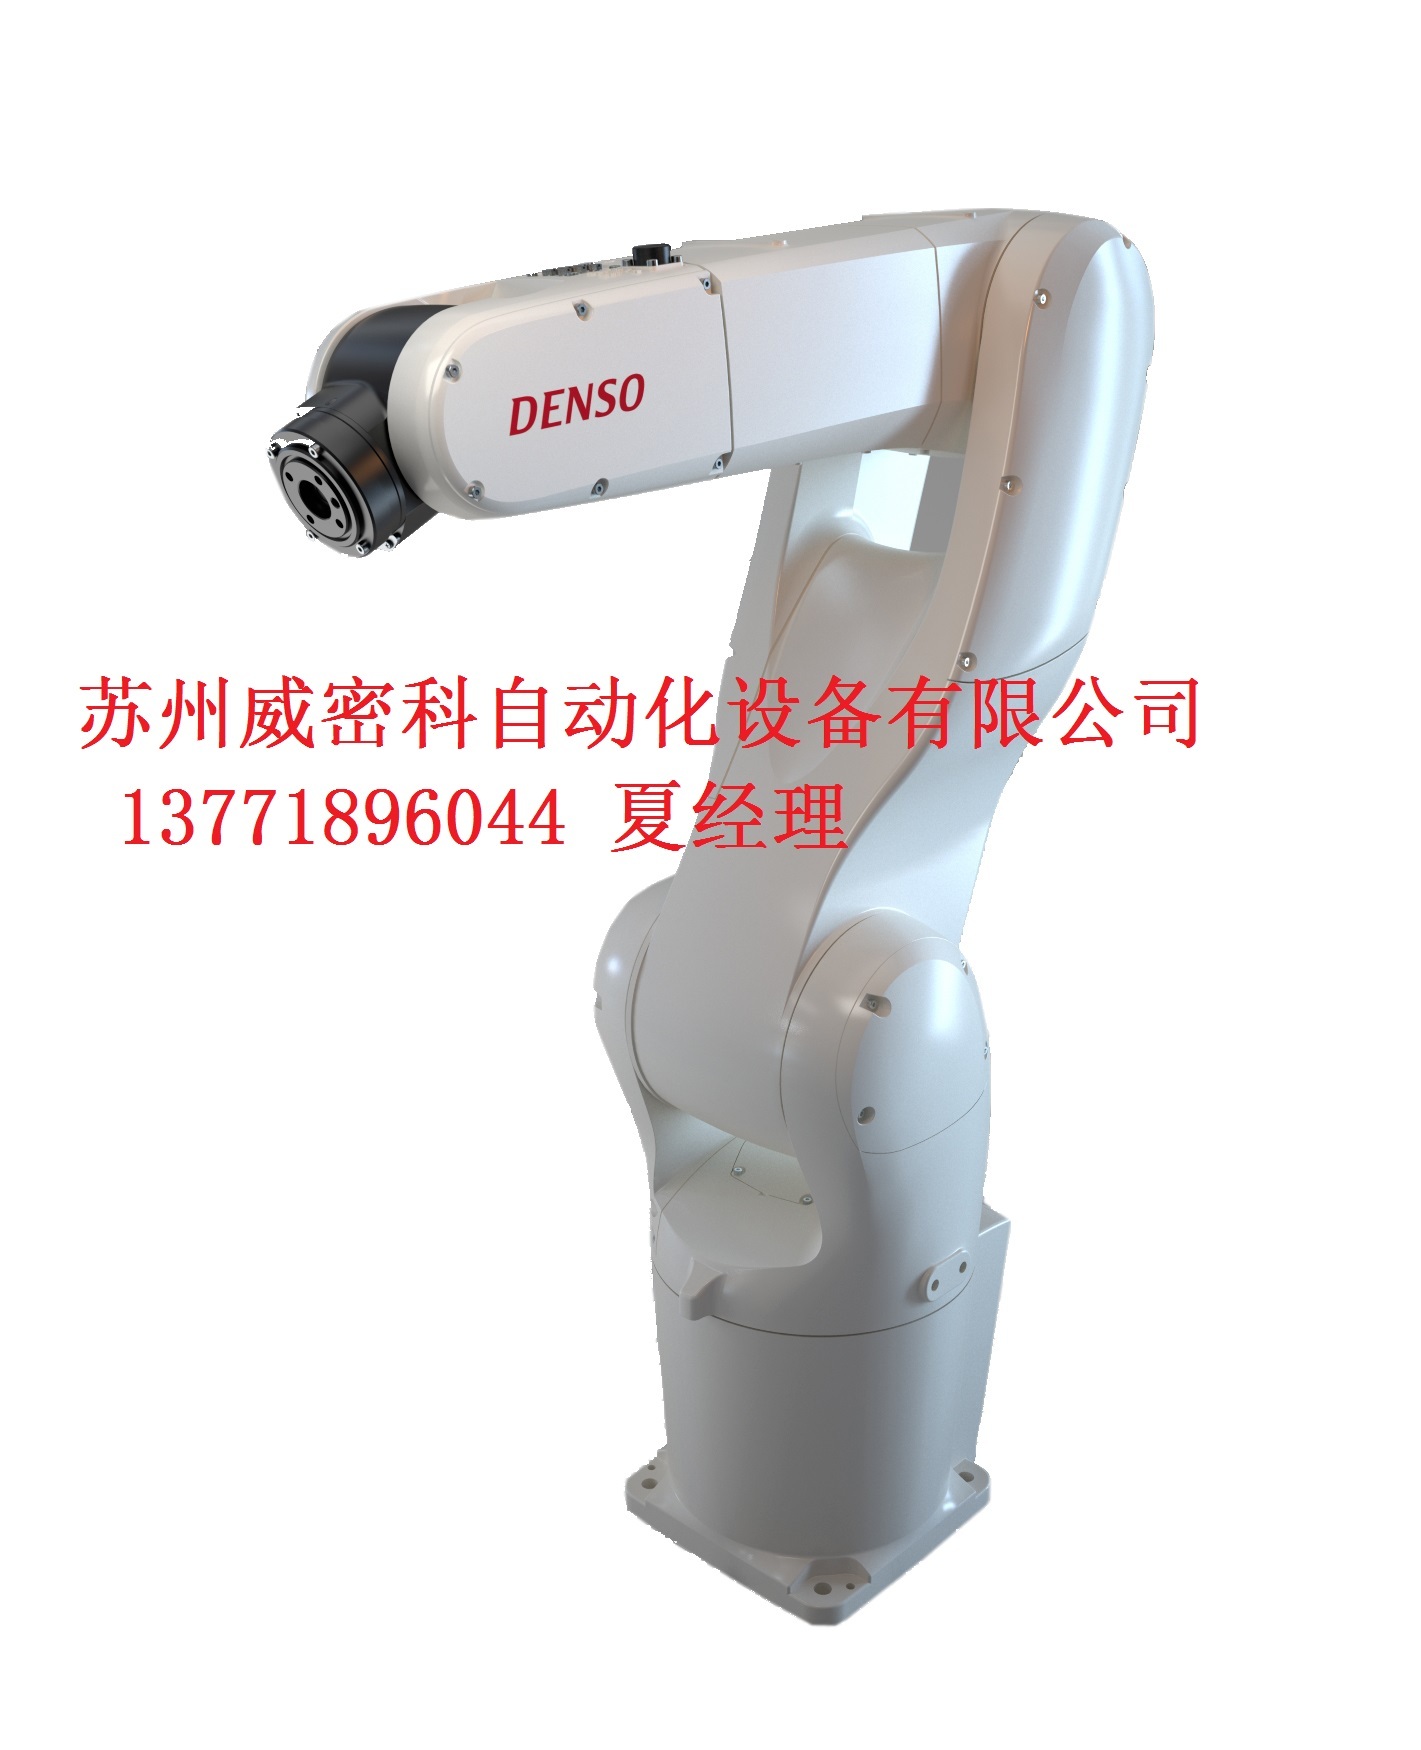 日本电装DENSO工业机器人VS-6556-B